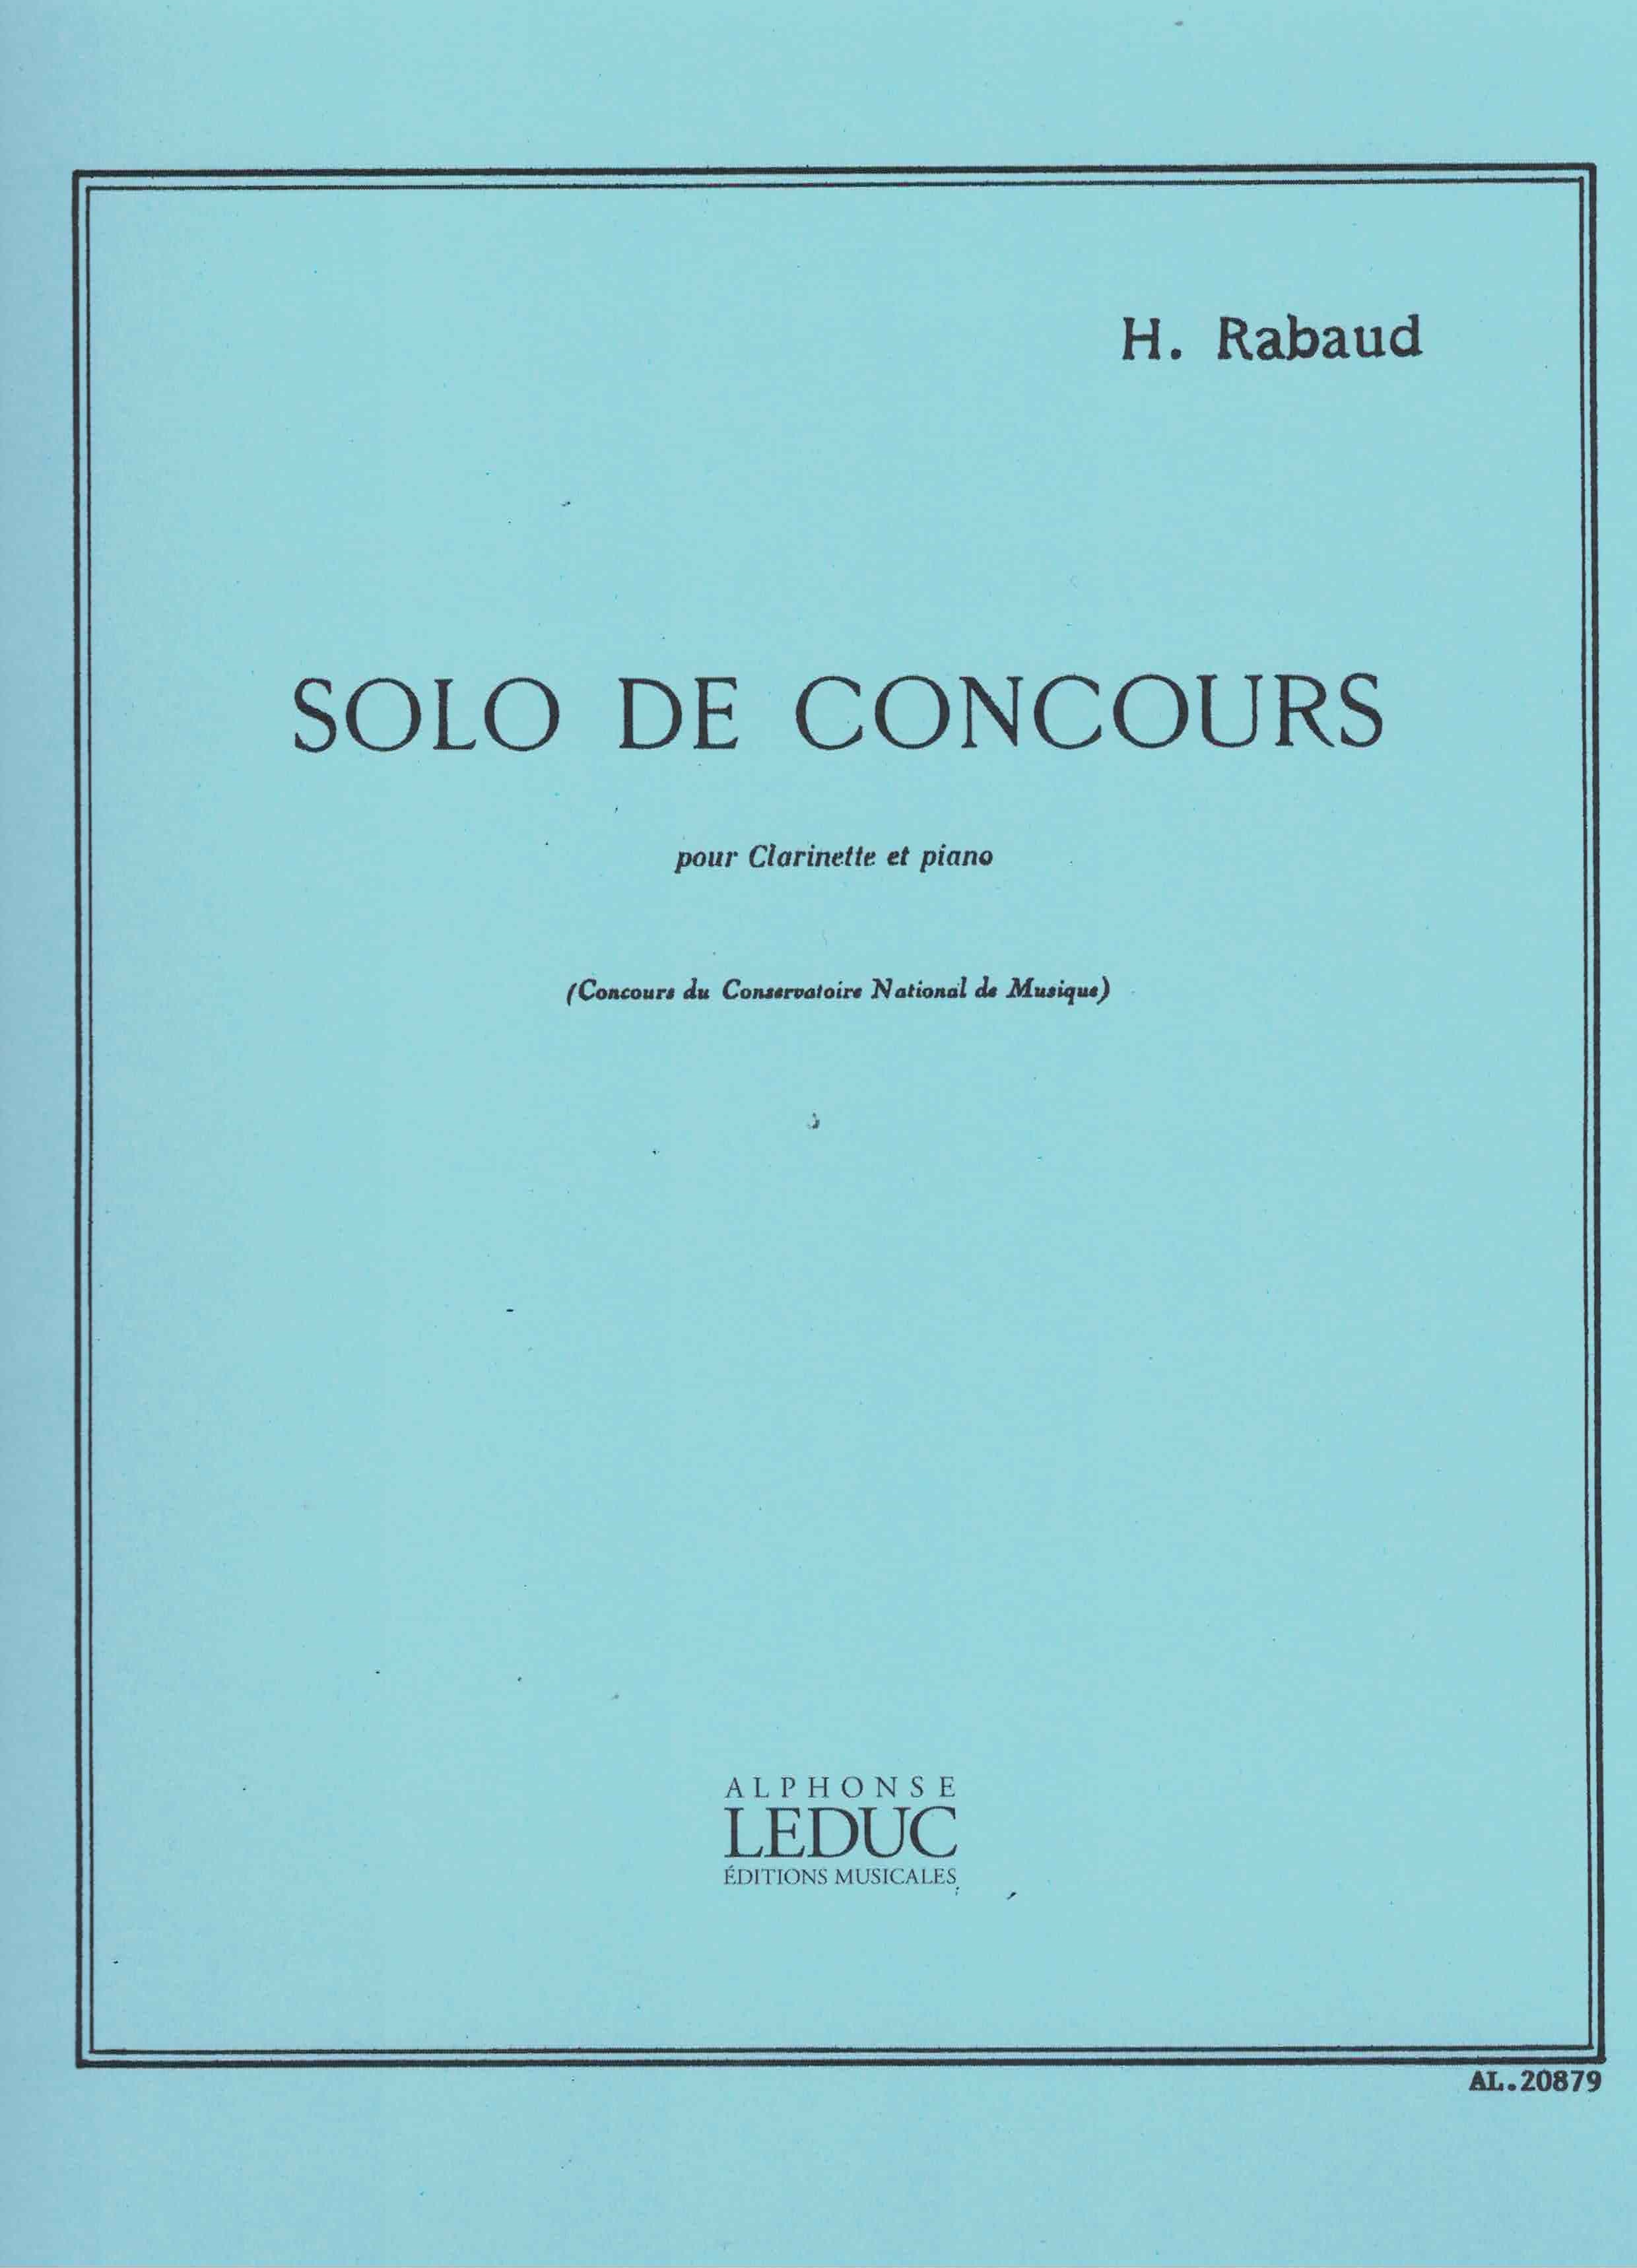 Solo de Concours - Rabaud, Klarinette/Klavier